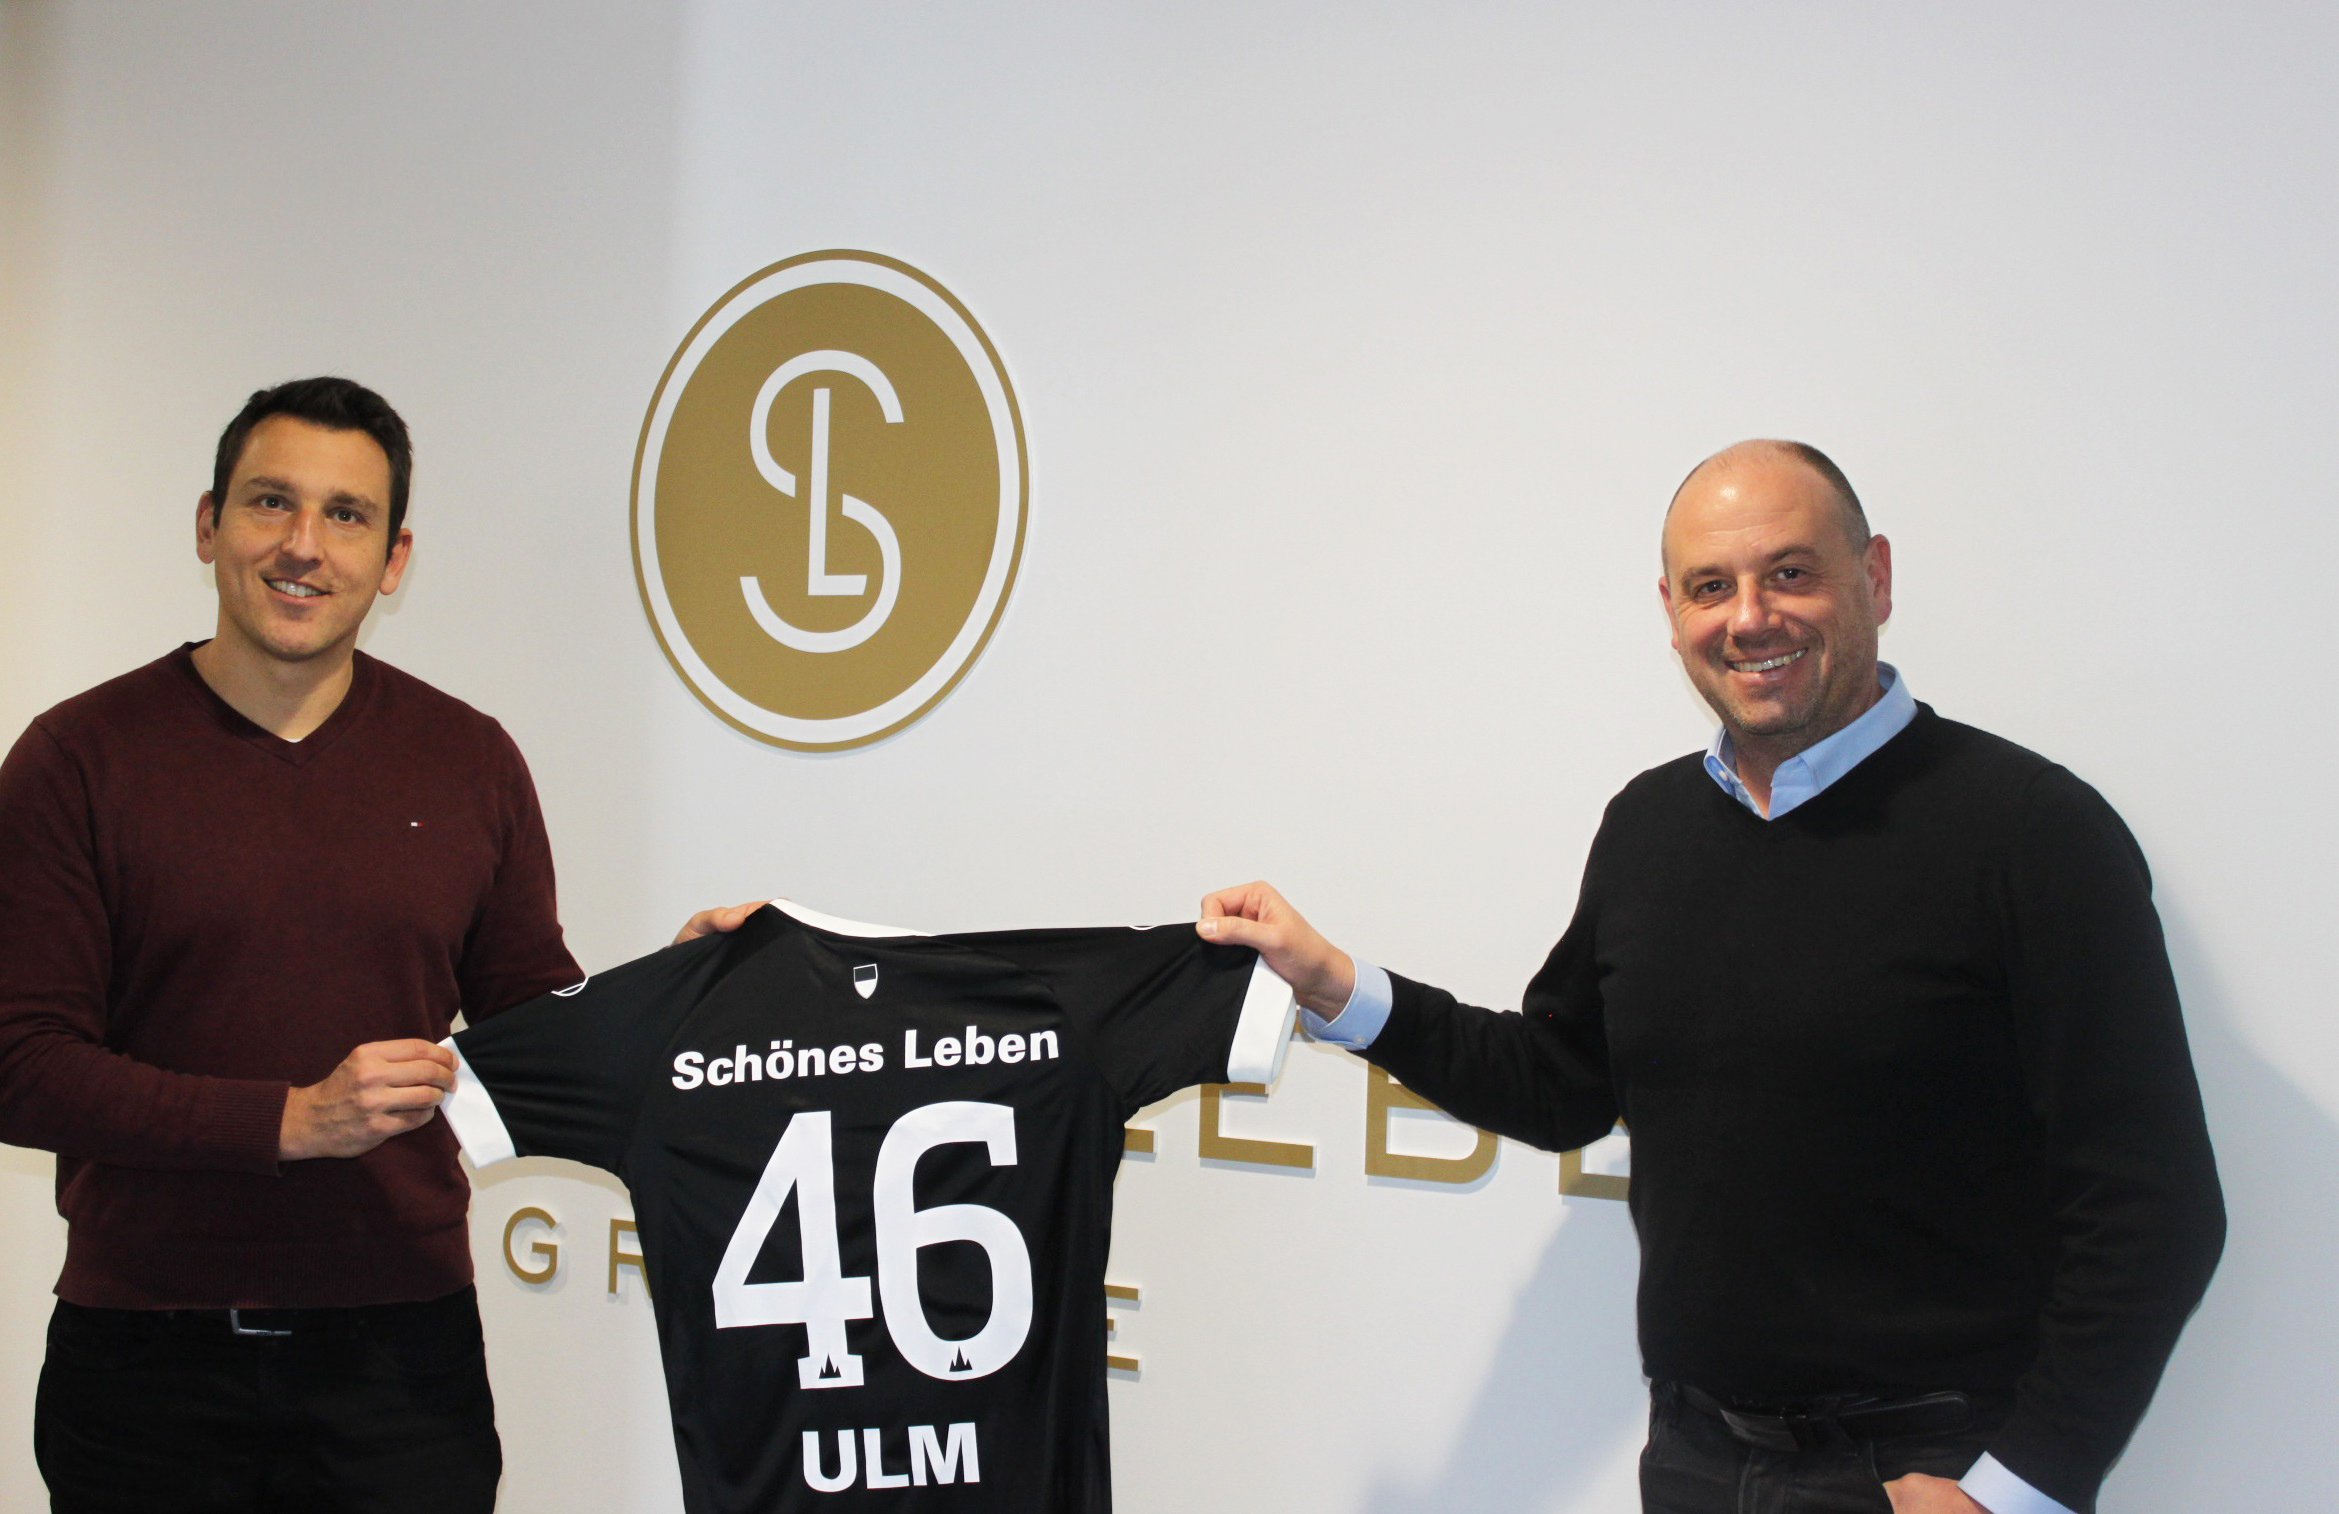 SCHÖNES LEBEN Gruppe wird neuer Partner des SSV Ulm 1846 Fußball